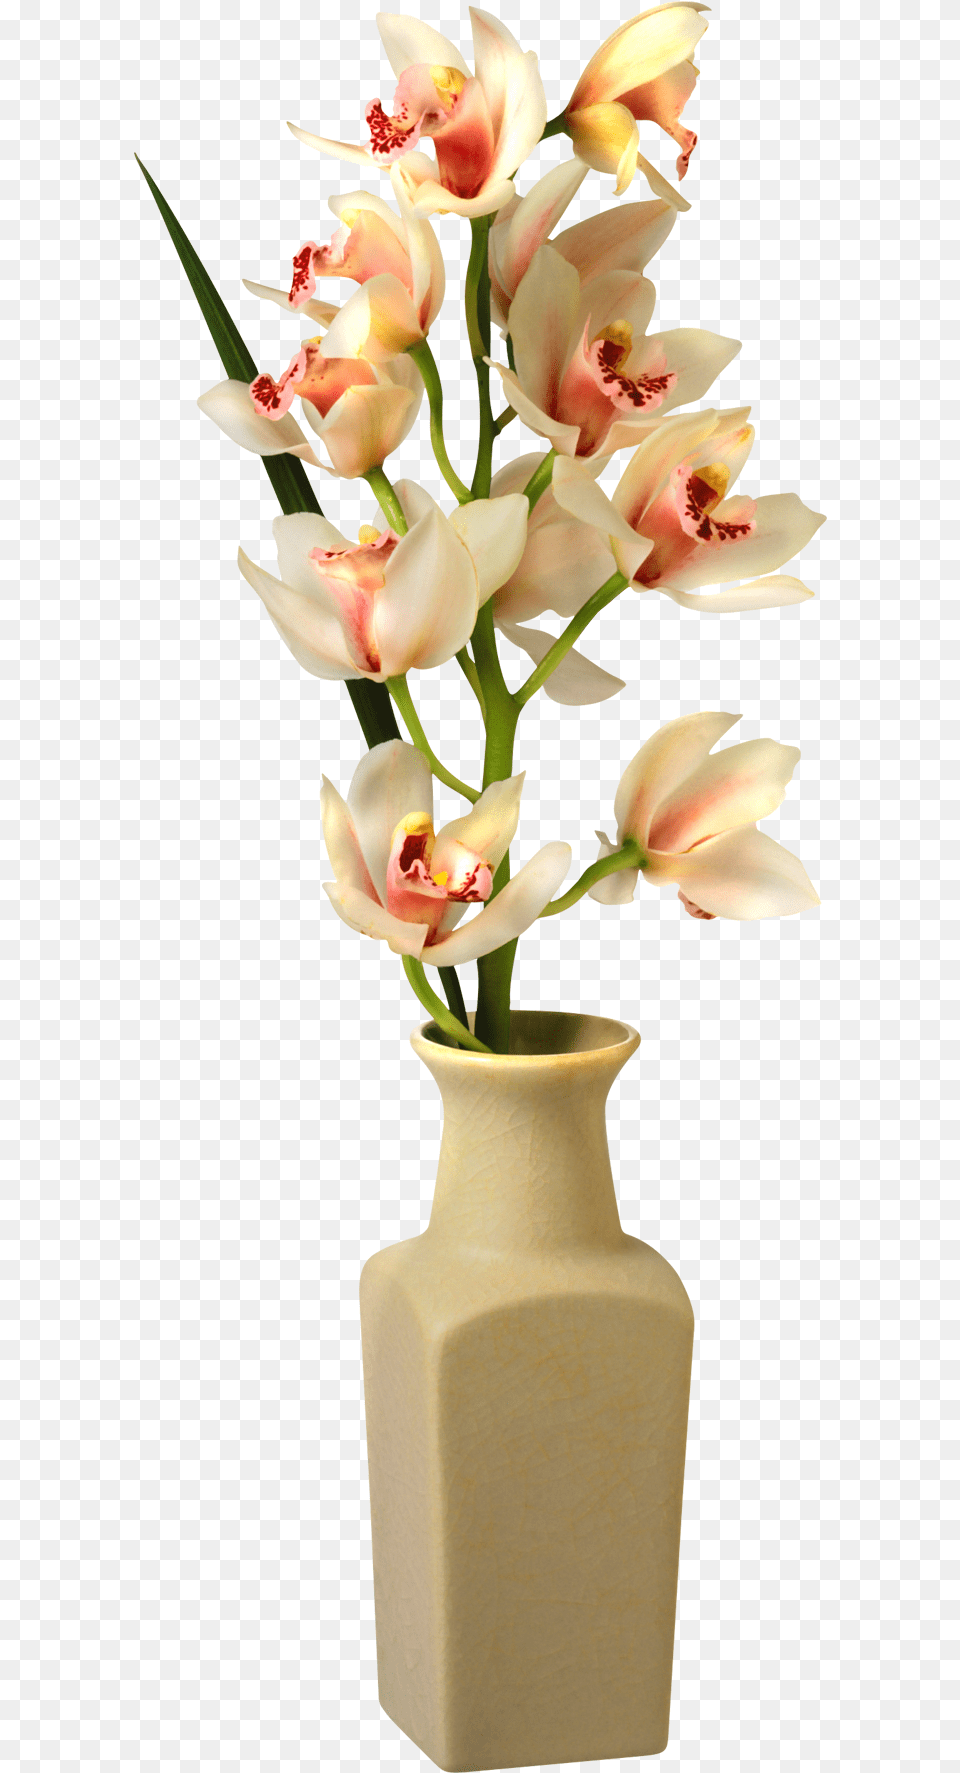 Tropical Flower Vase Transparent Transparent Flower Vase, Flower Arrangement, Jar, Plant, Pottery Png